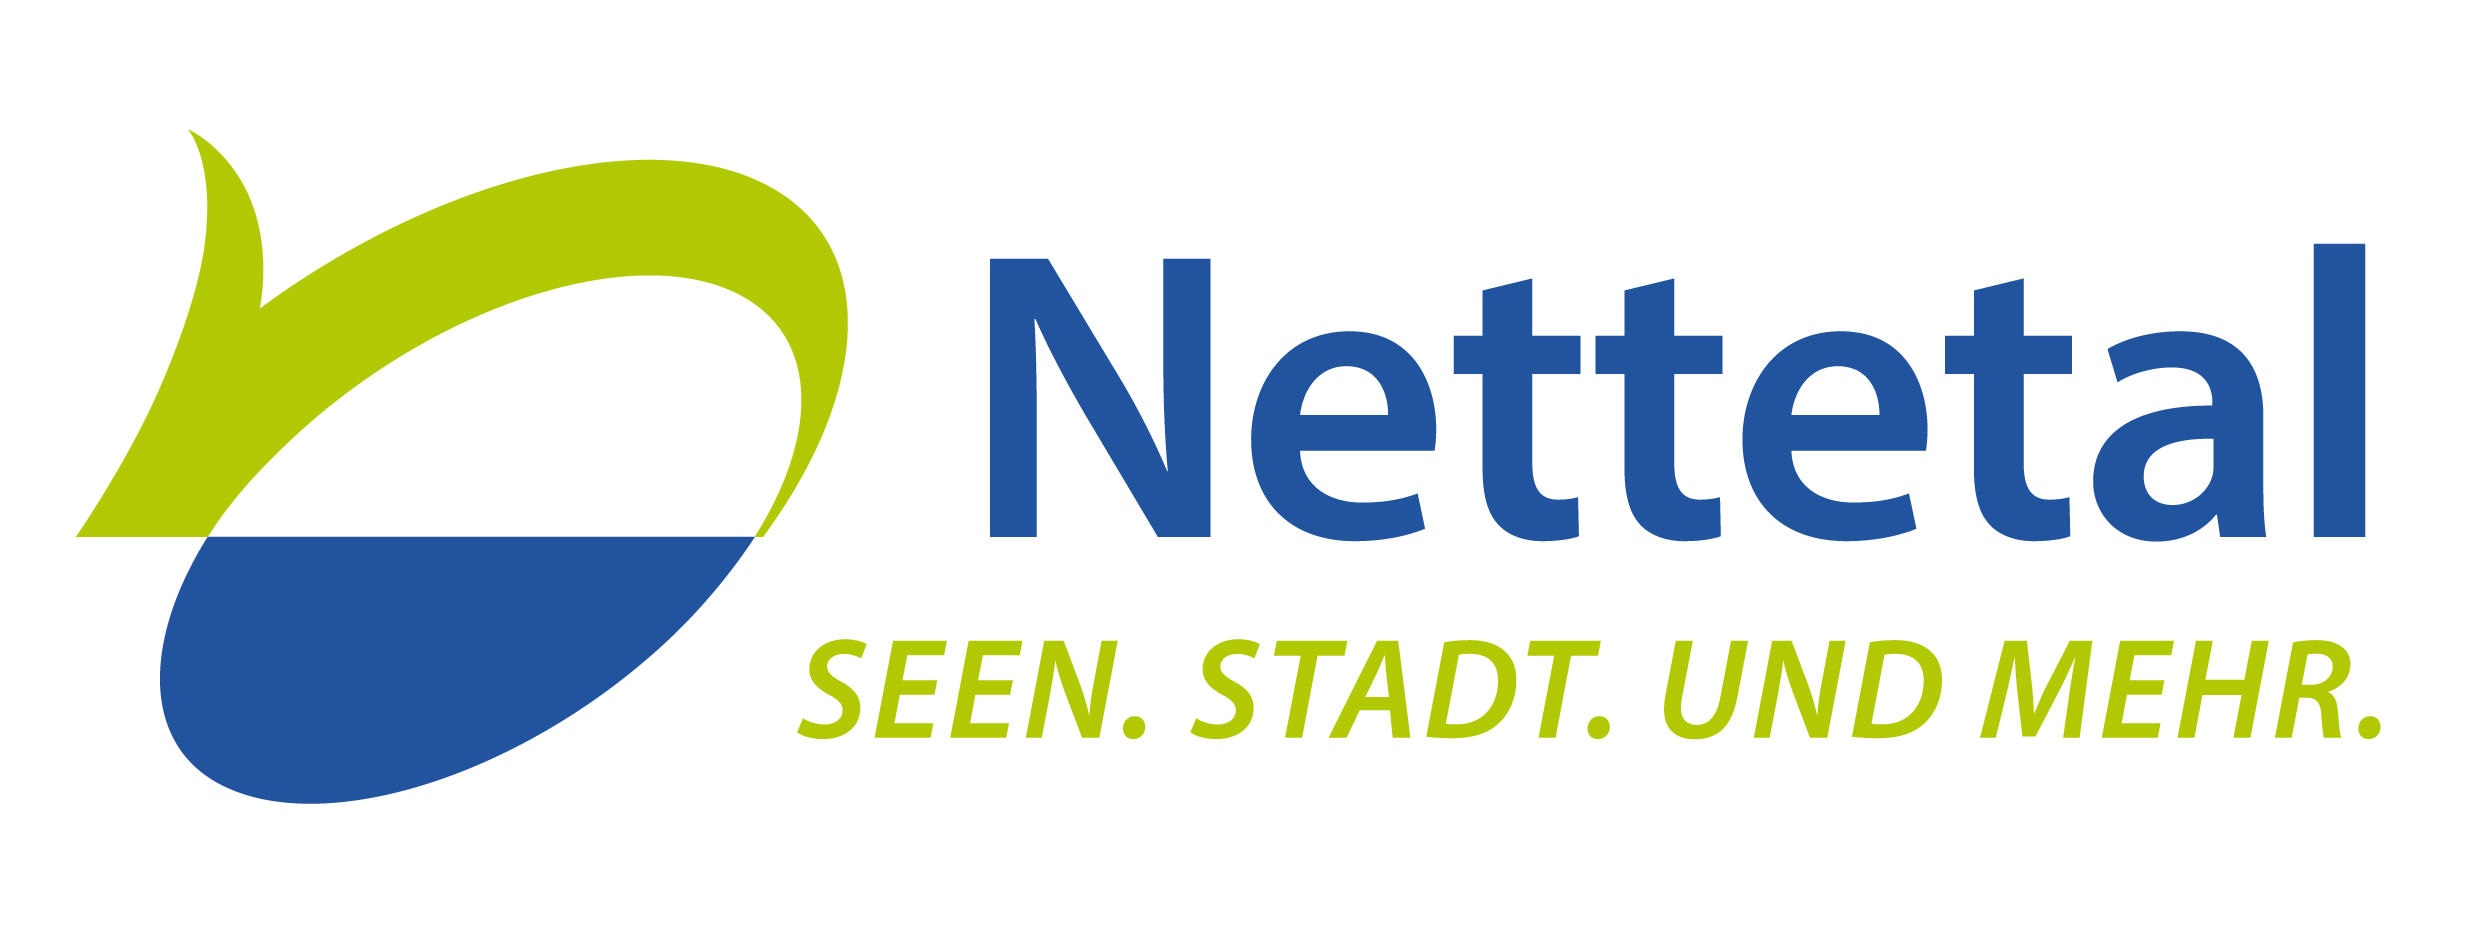 Logo der Stadt Nettetal